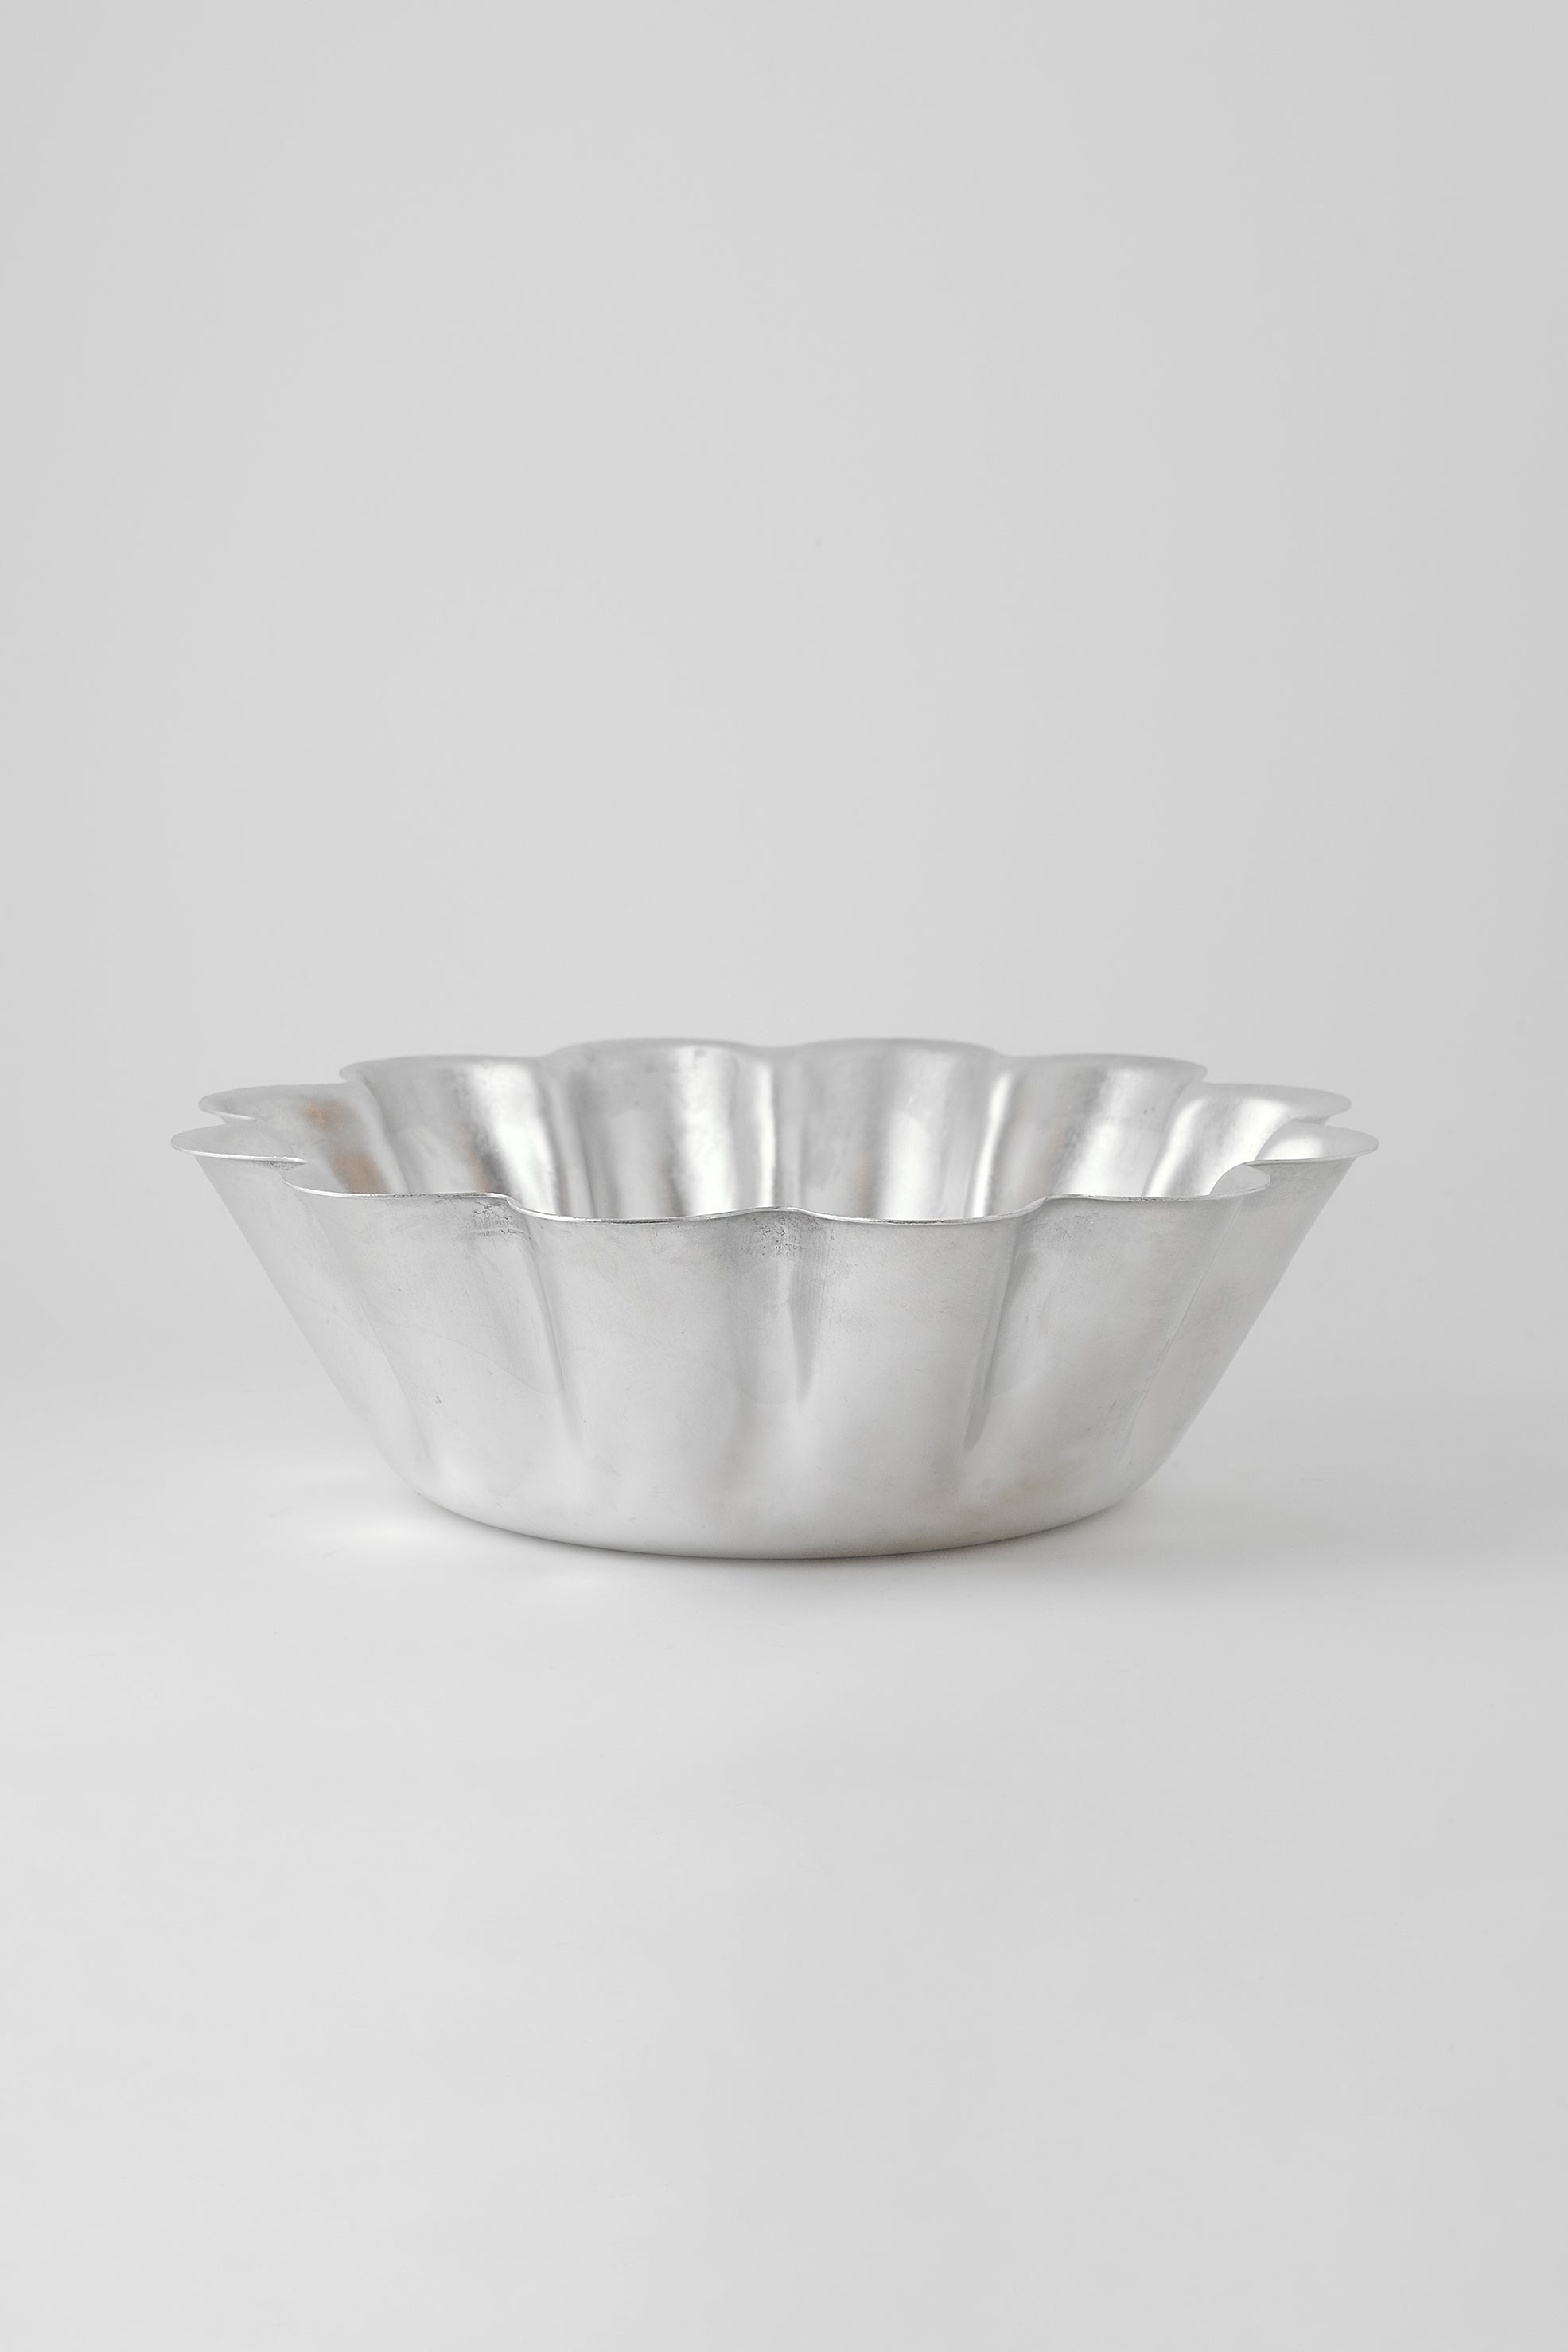 Aluminium ruffle bowl-Inox-KIOSK48TH